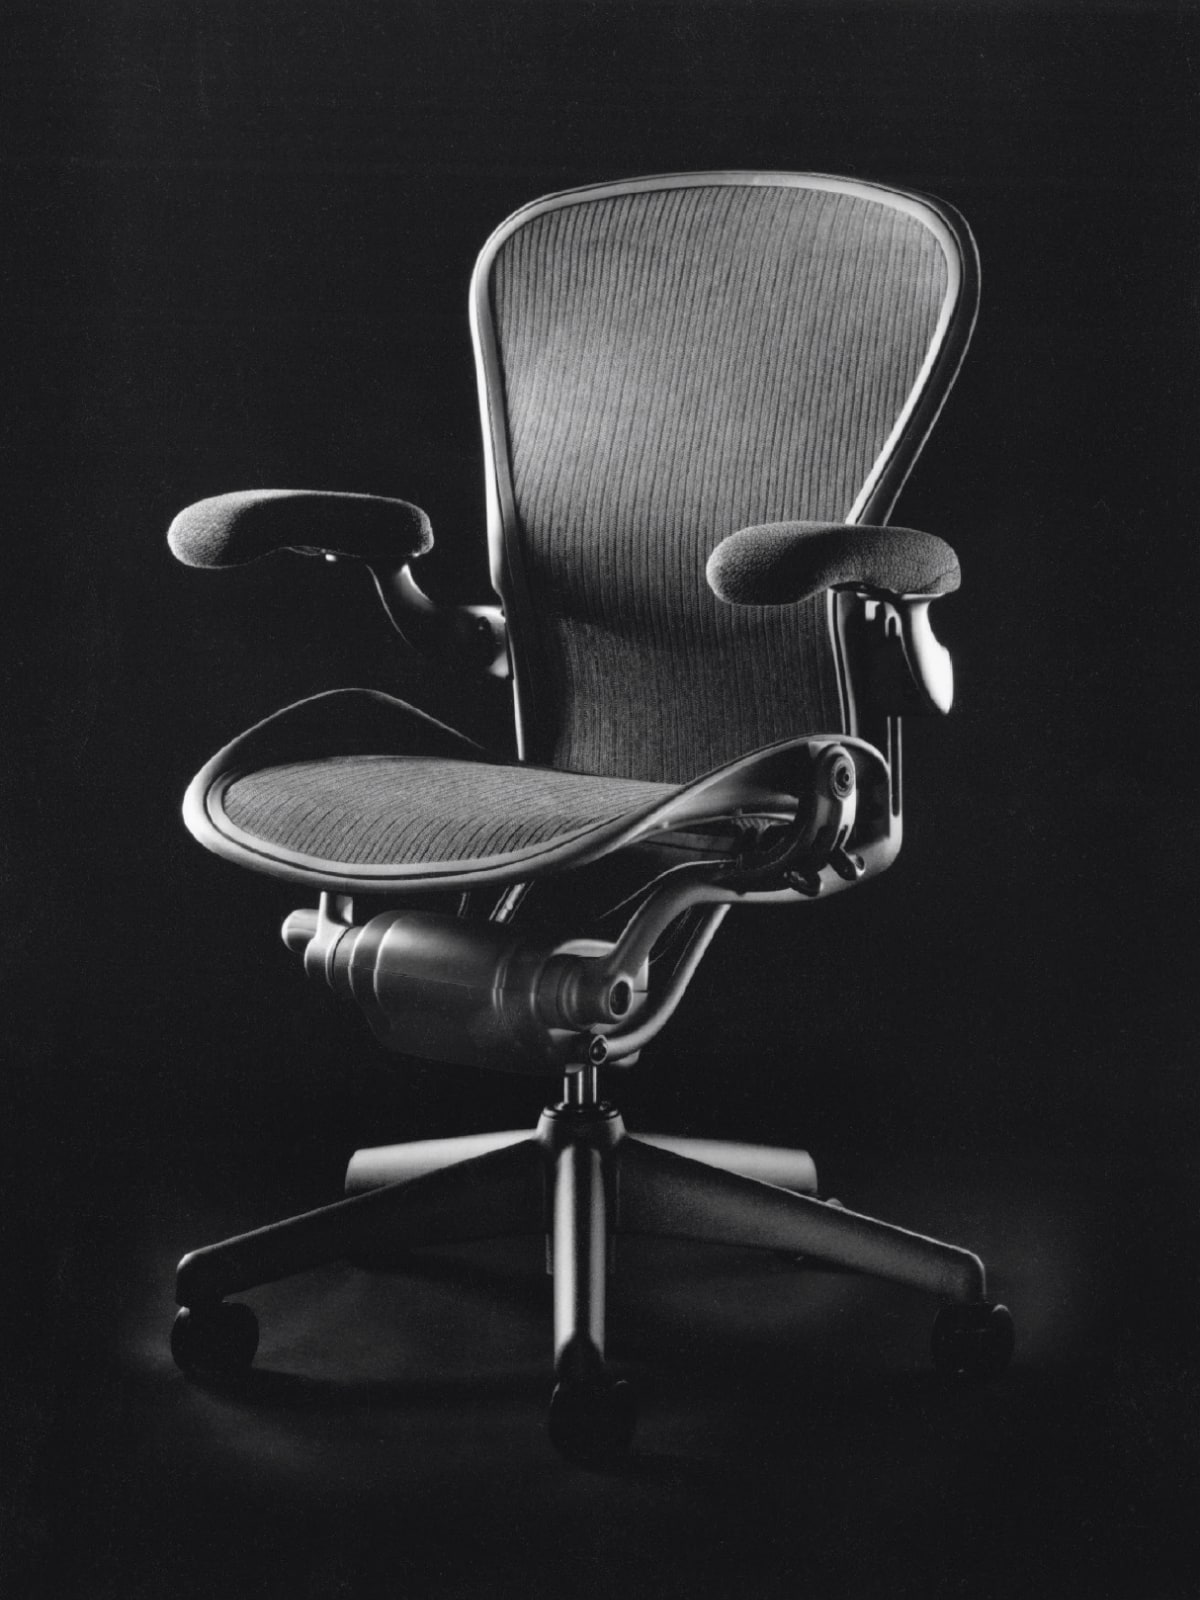 A black Aeron Chair with a 5-star base.